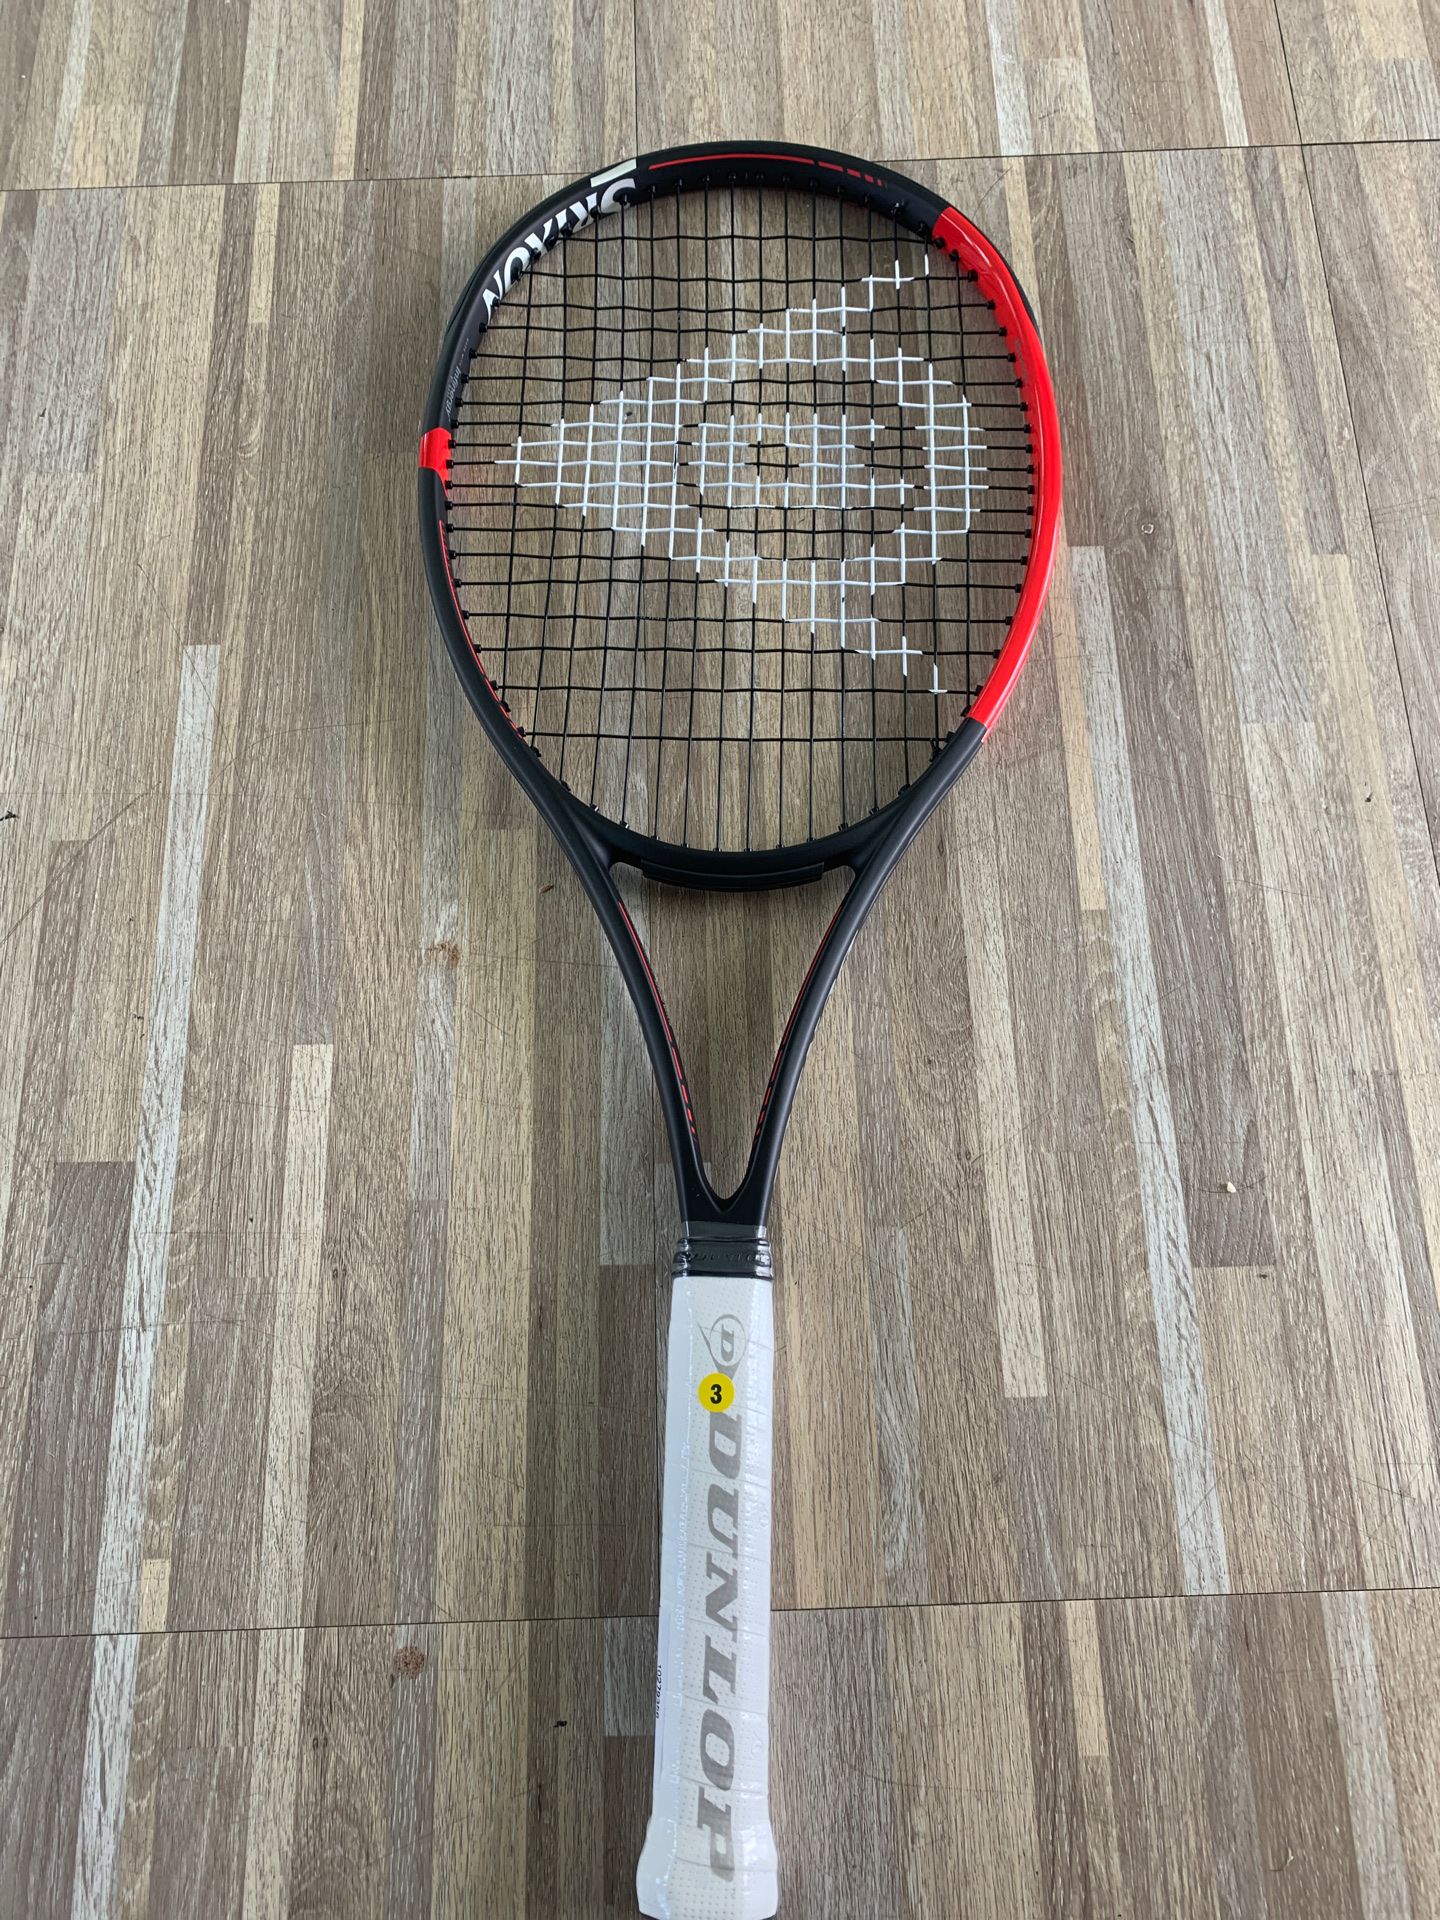 Dunlop Srixon CX300LS tennis rackets